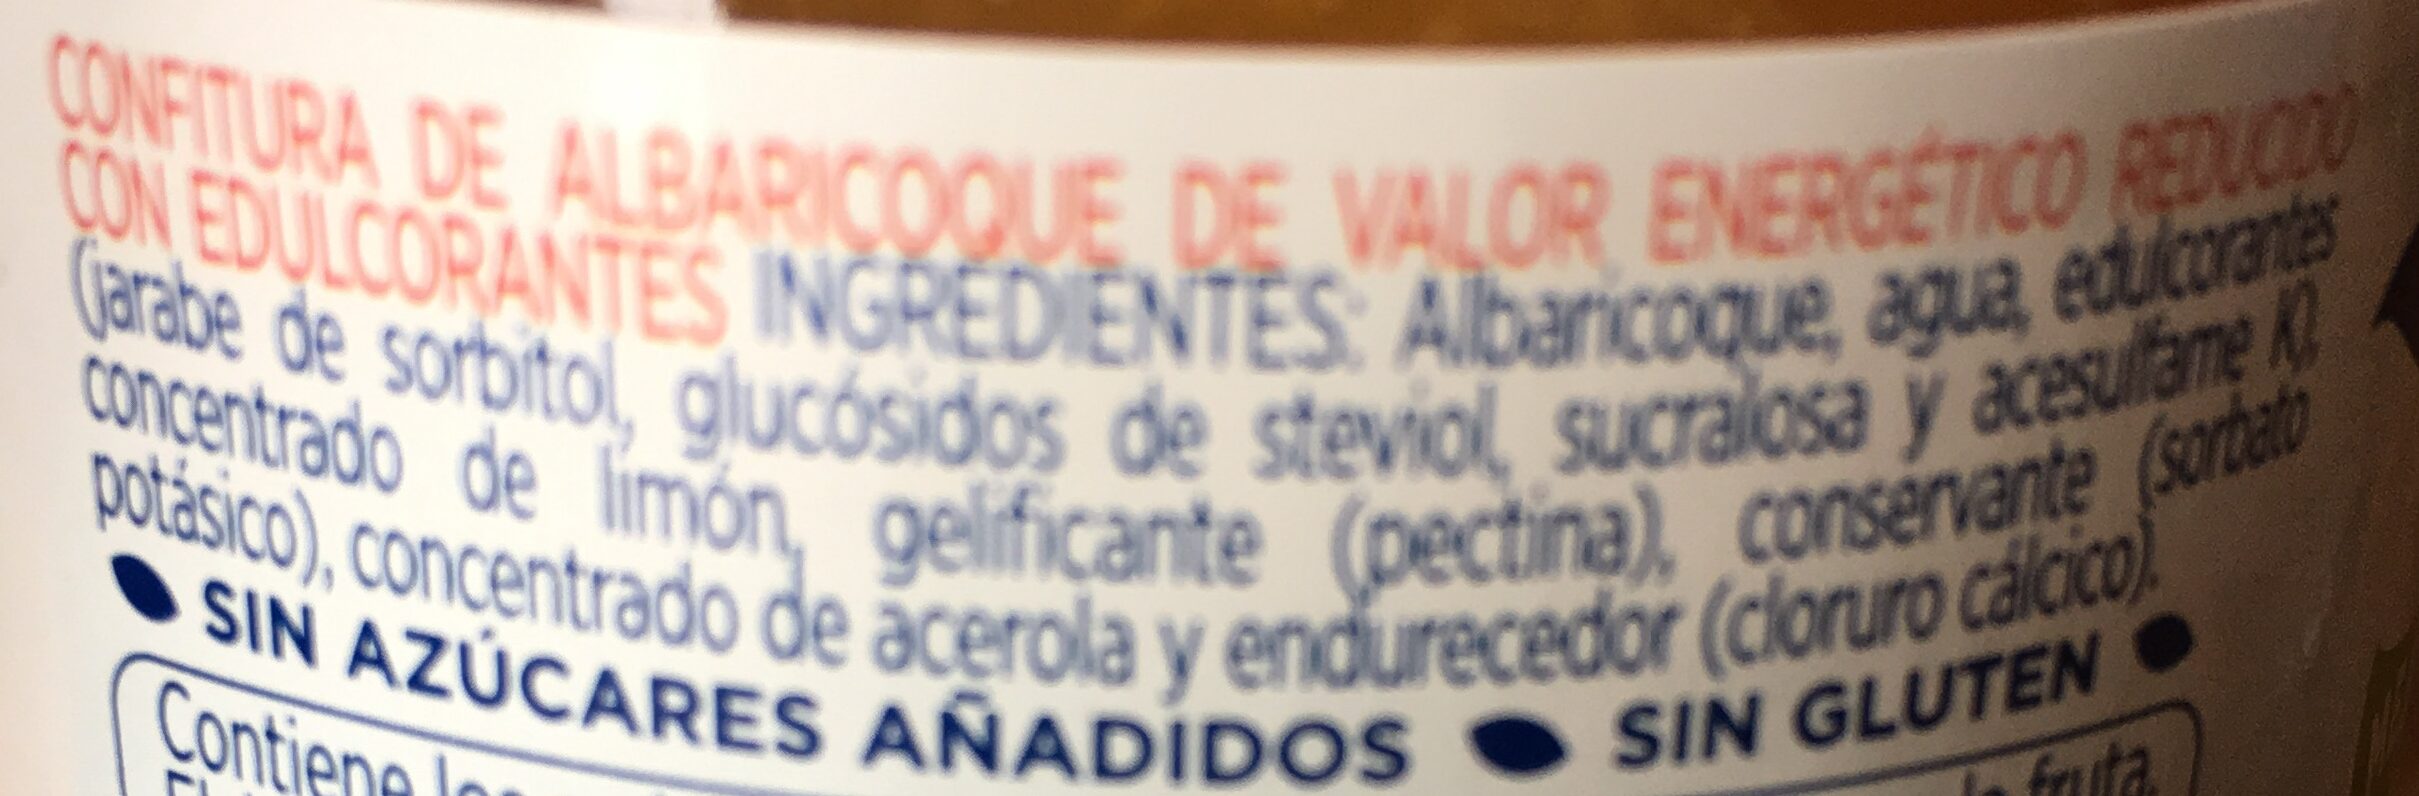 Mermelada de albaricoques diet - Ingredients - es